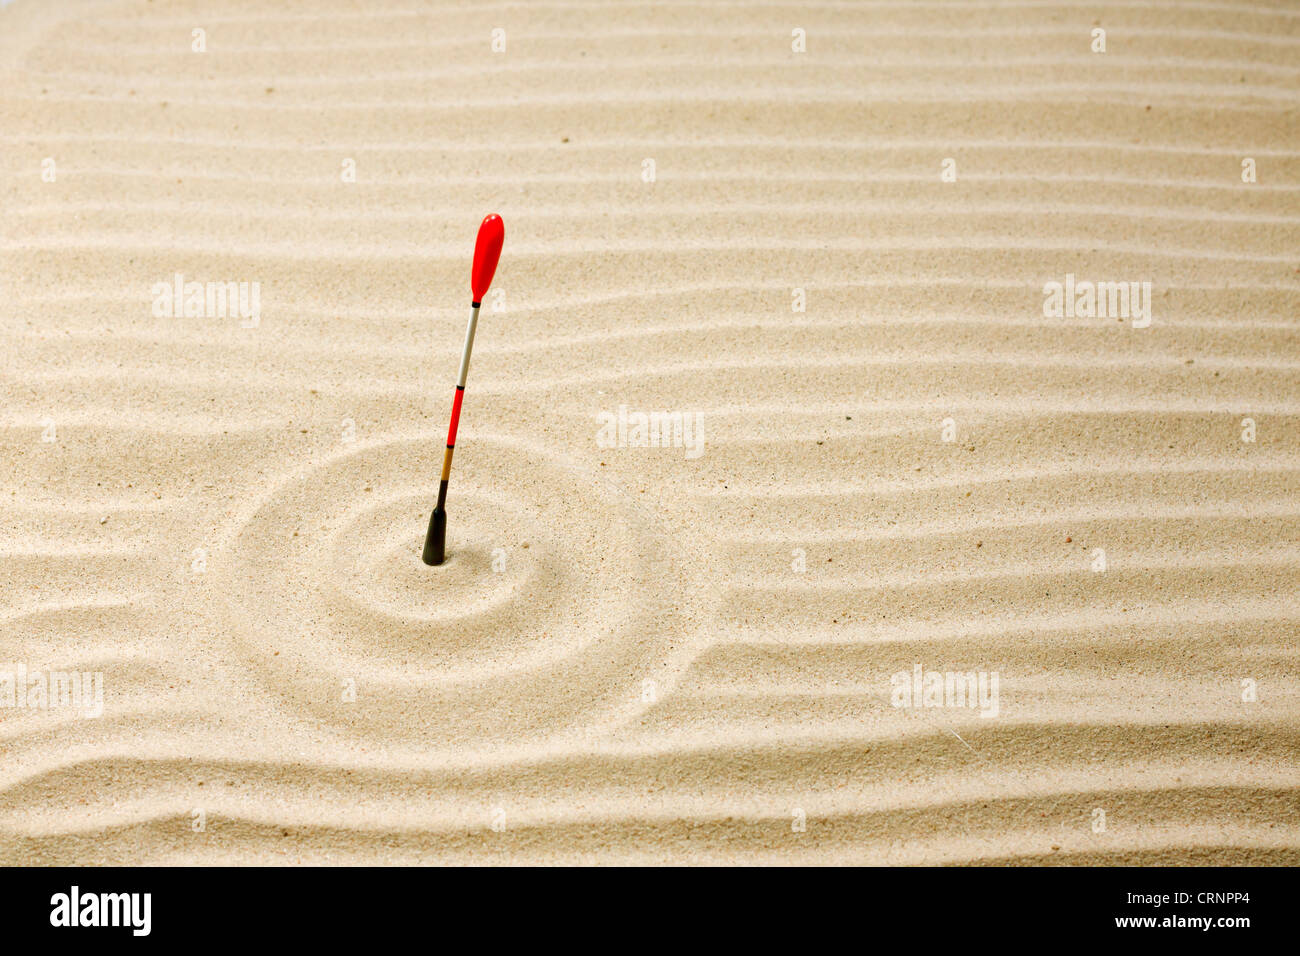 Angeln und Geduld abstrakte unrealistisch einzigartiges Konzept der Schwimmer in der Wüste sand Stockfoto